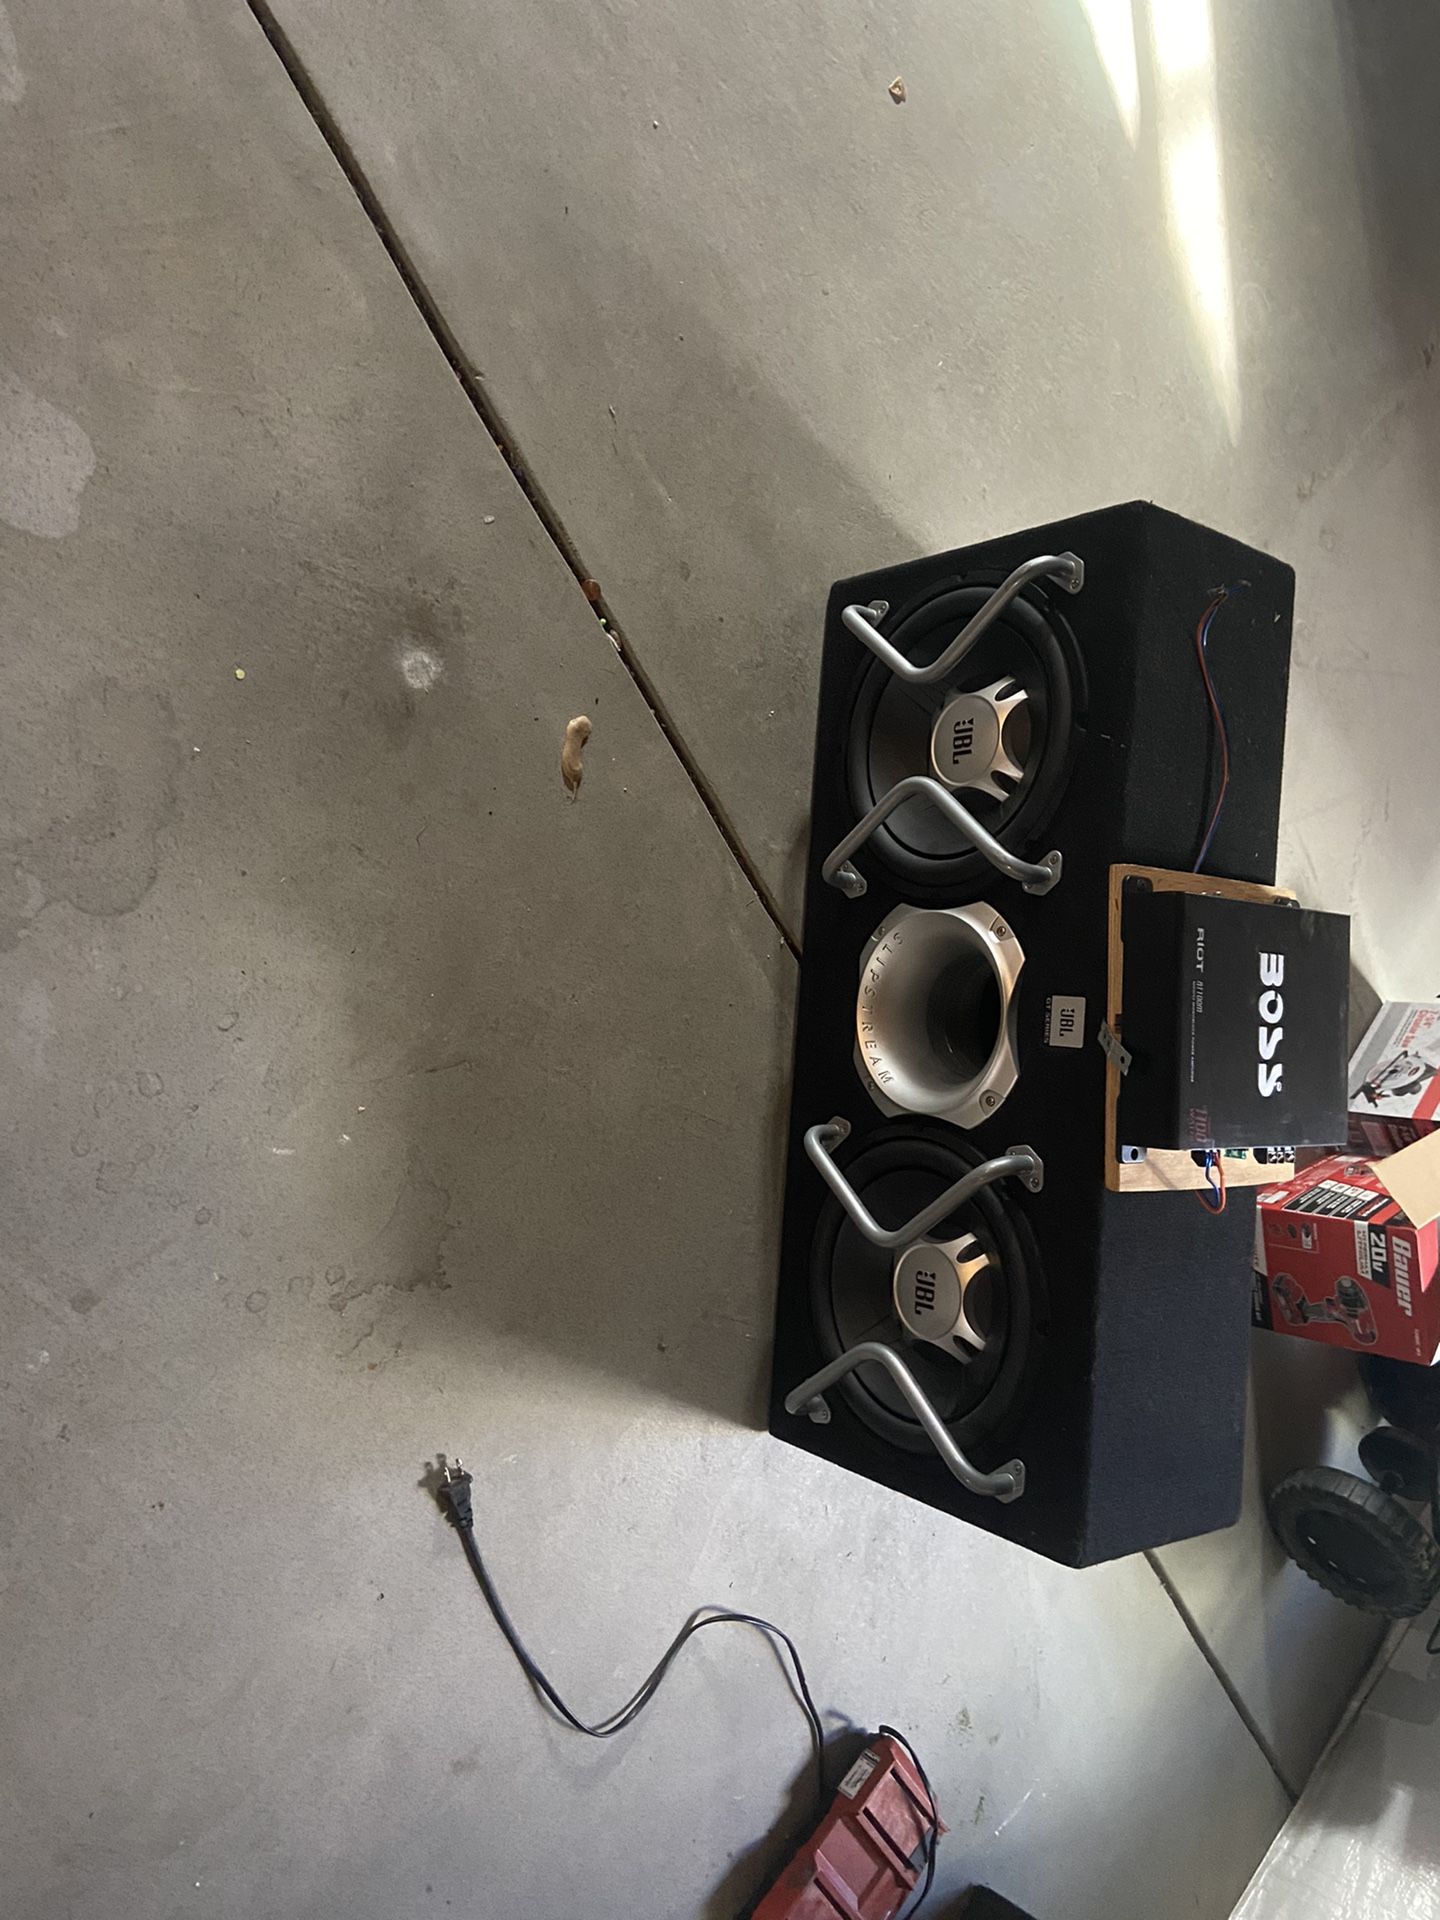 jBL Speakers For Sale Whit Amplifier For 380 Dollars